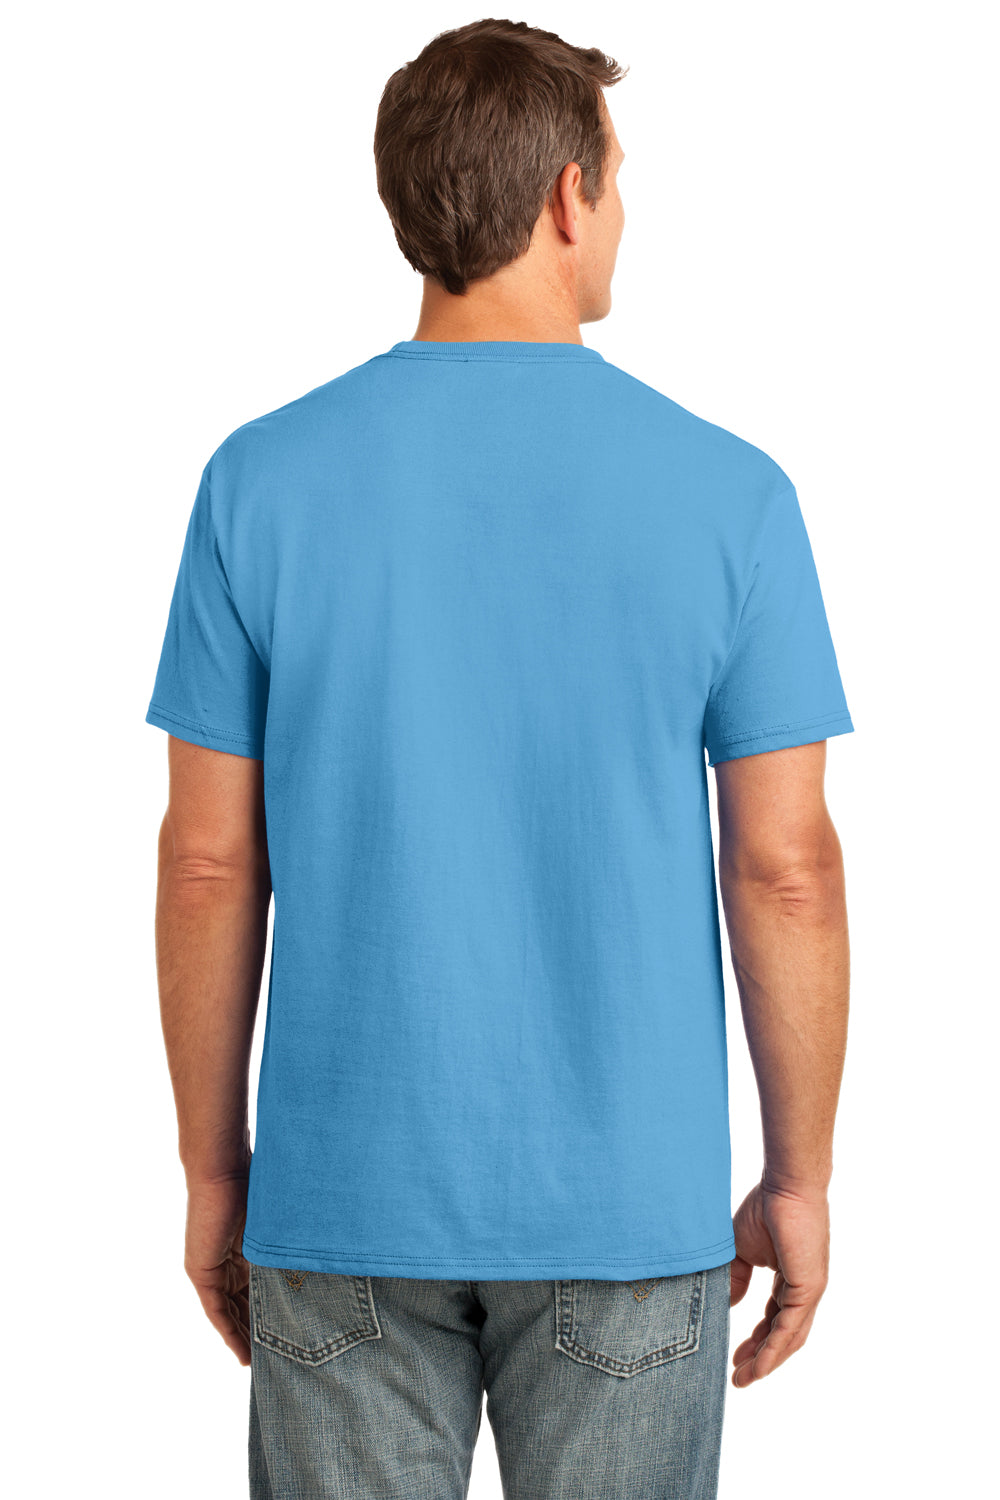 Port & Company PC54P Mens Core Short Sleeve Crewneck T-Shirt w/ Pocket Aqua Blue Back